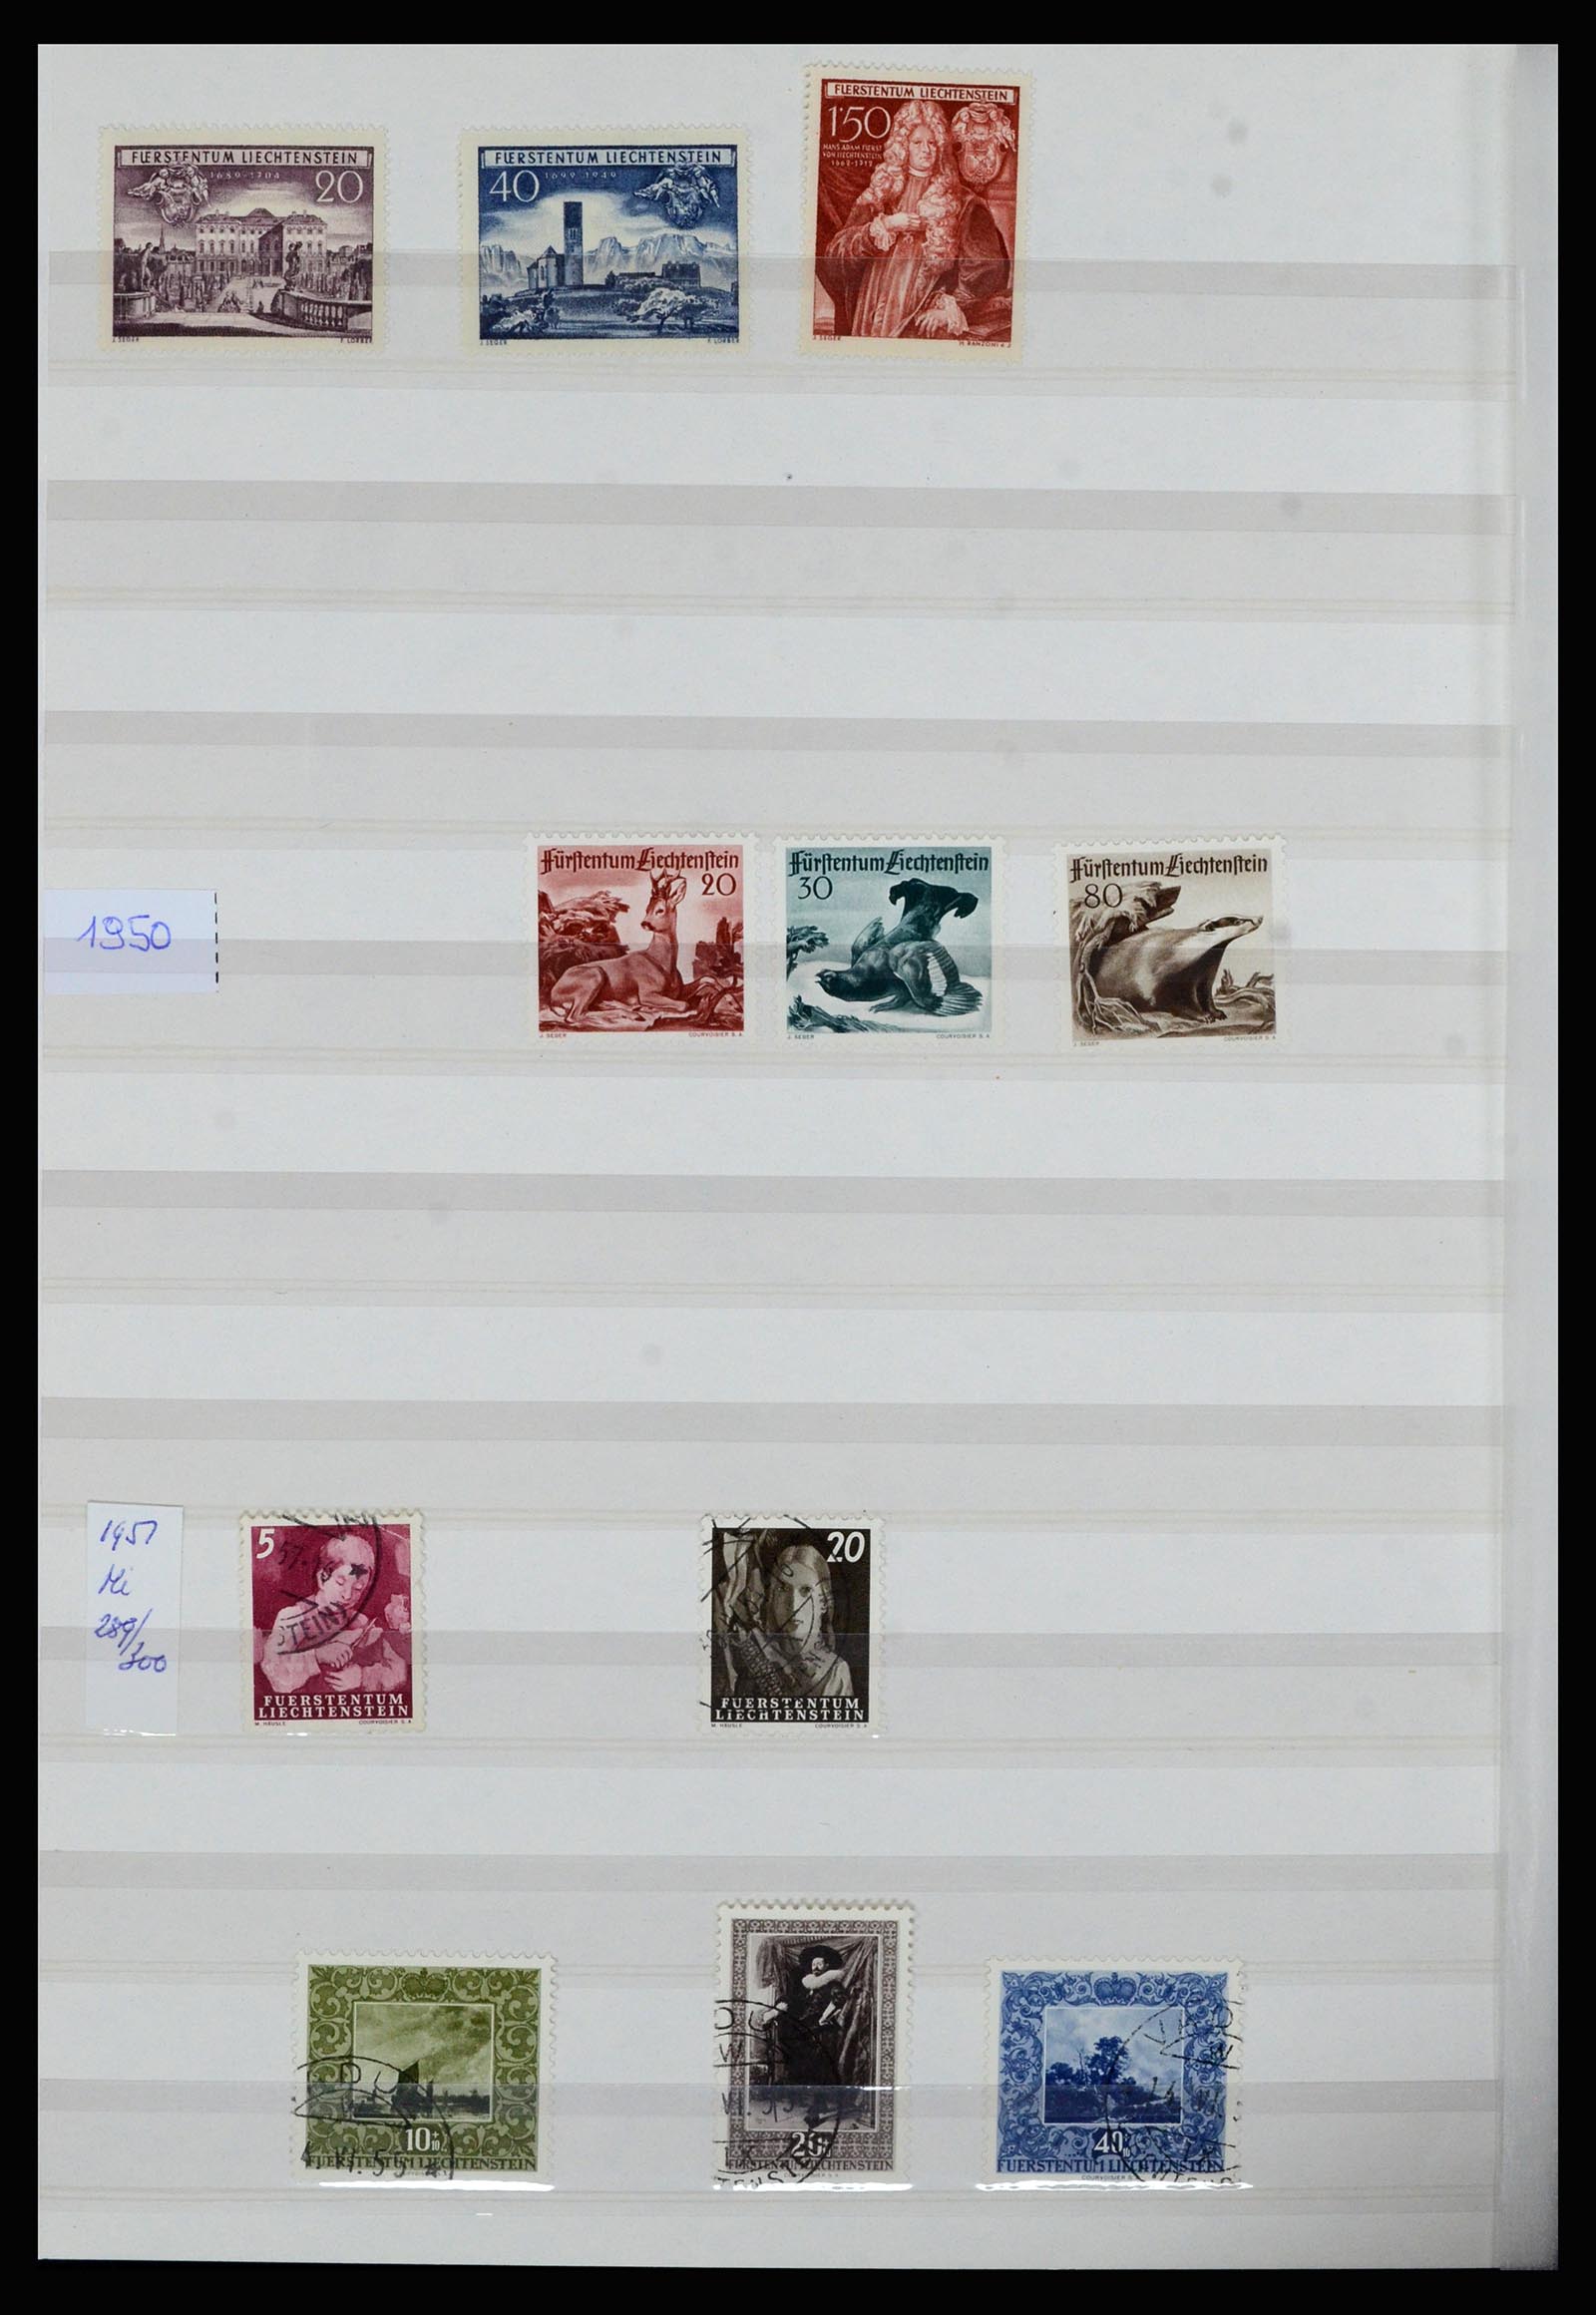 36899 007 - Stamp collection 36899 Liechtenstein 1930-2005.